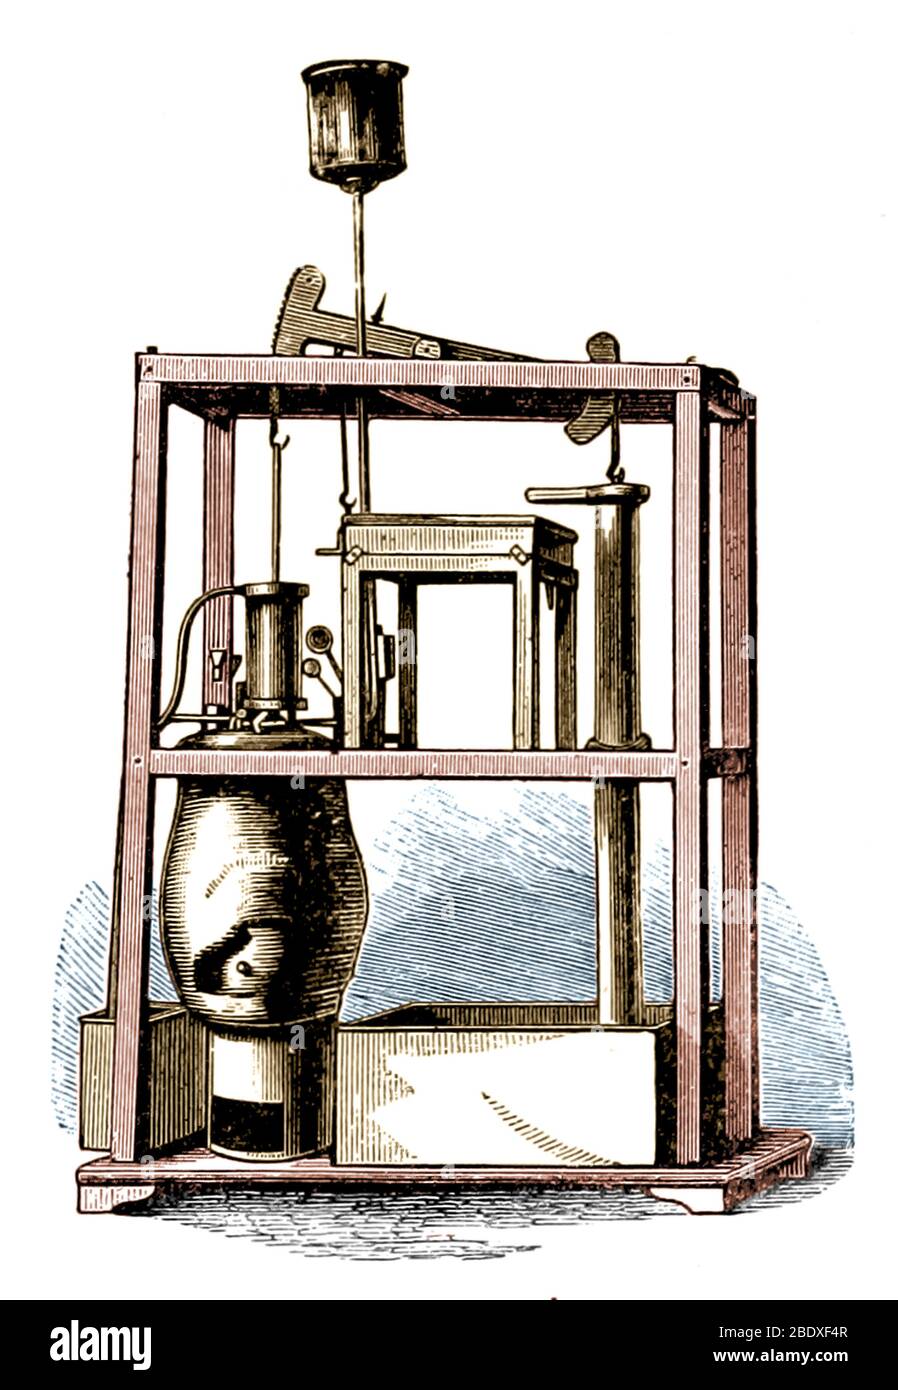 Moteur vapeur de Newcomen, XVIIIe siècle Banque D'Images